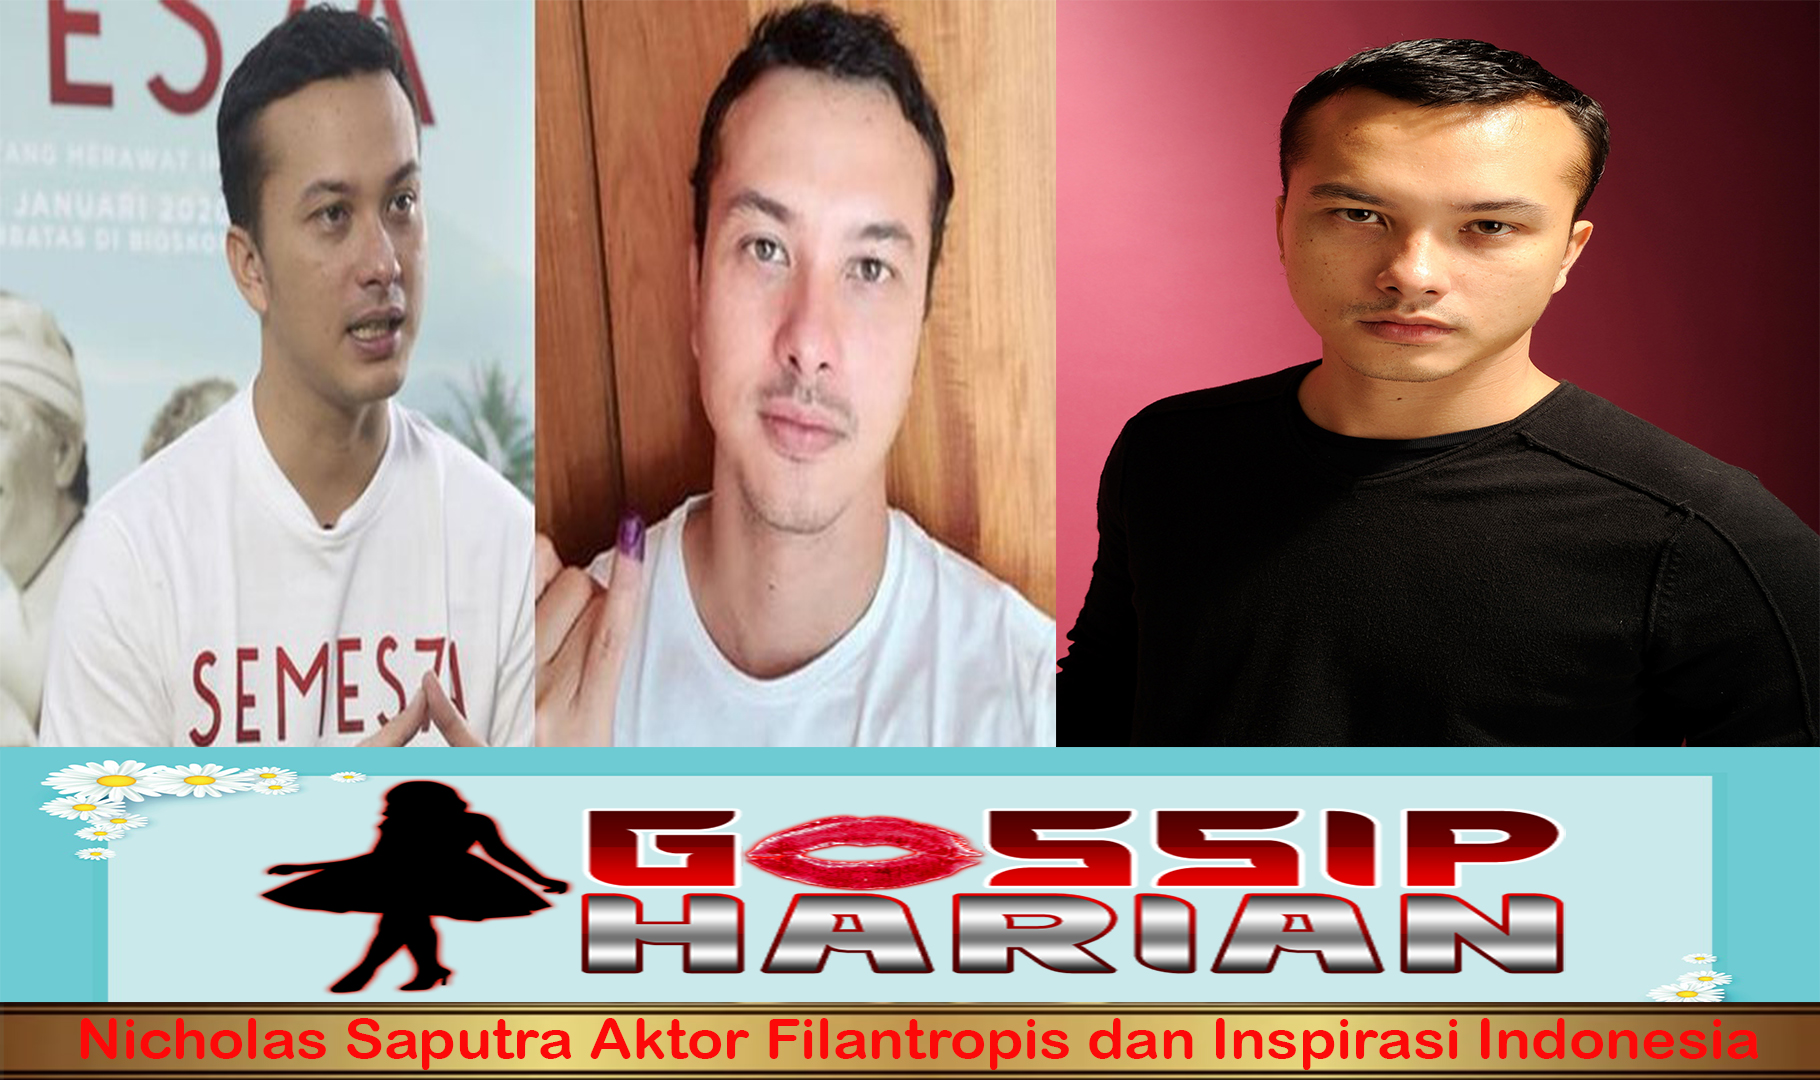 Nicholas Saputra Aktor Filantropis dan Inspirasi Indonesia